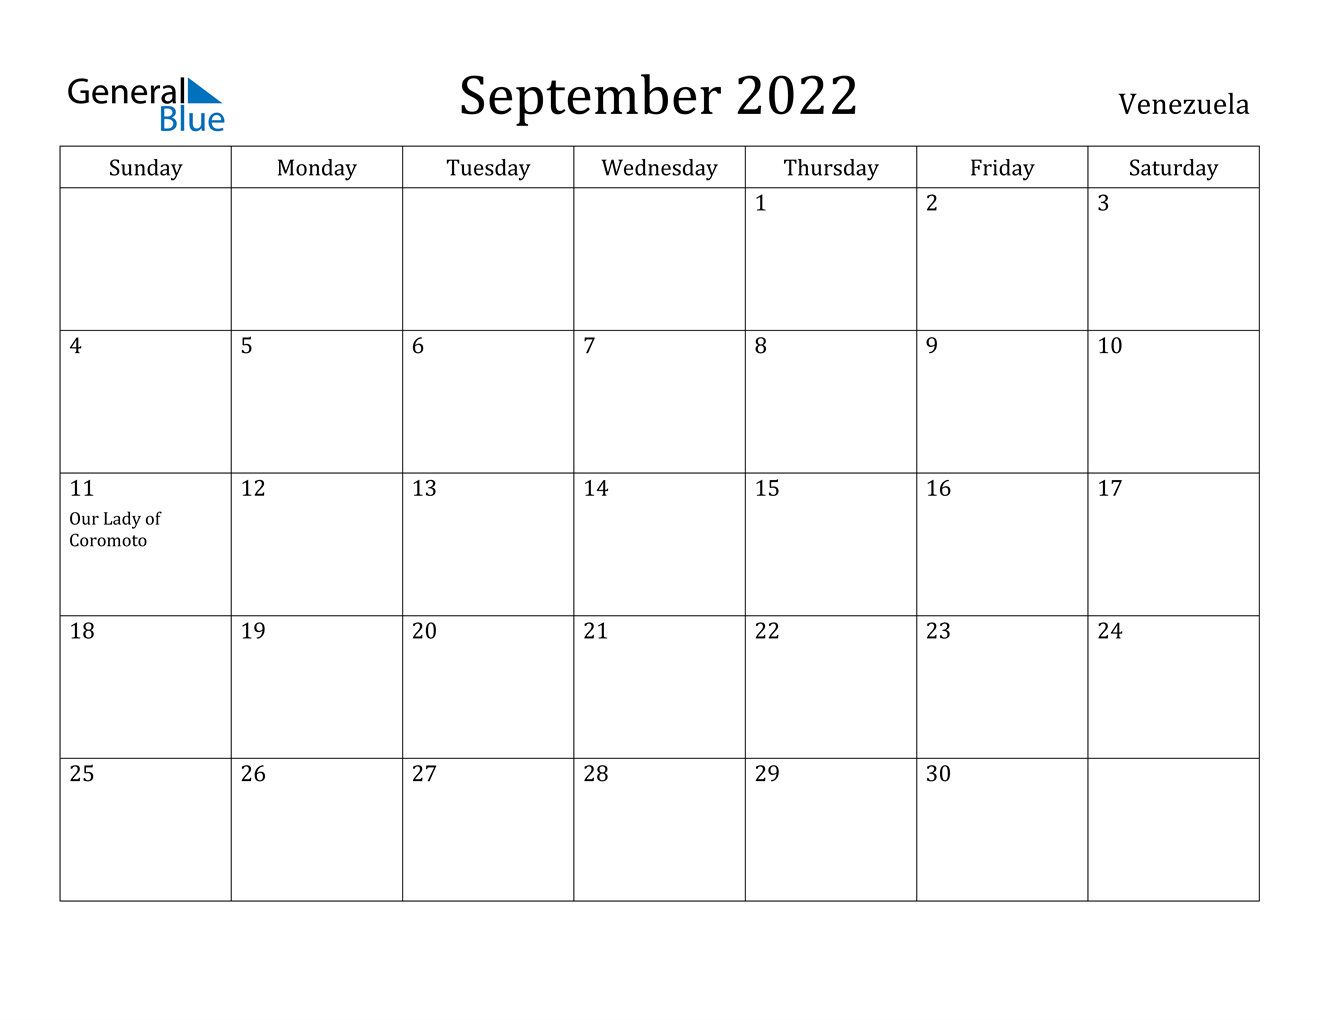 venezuela september 2022 calendar with holidays